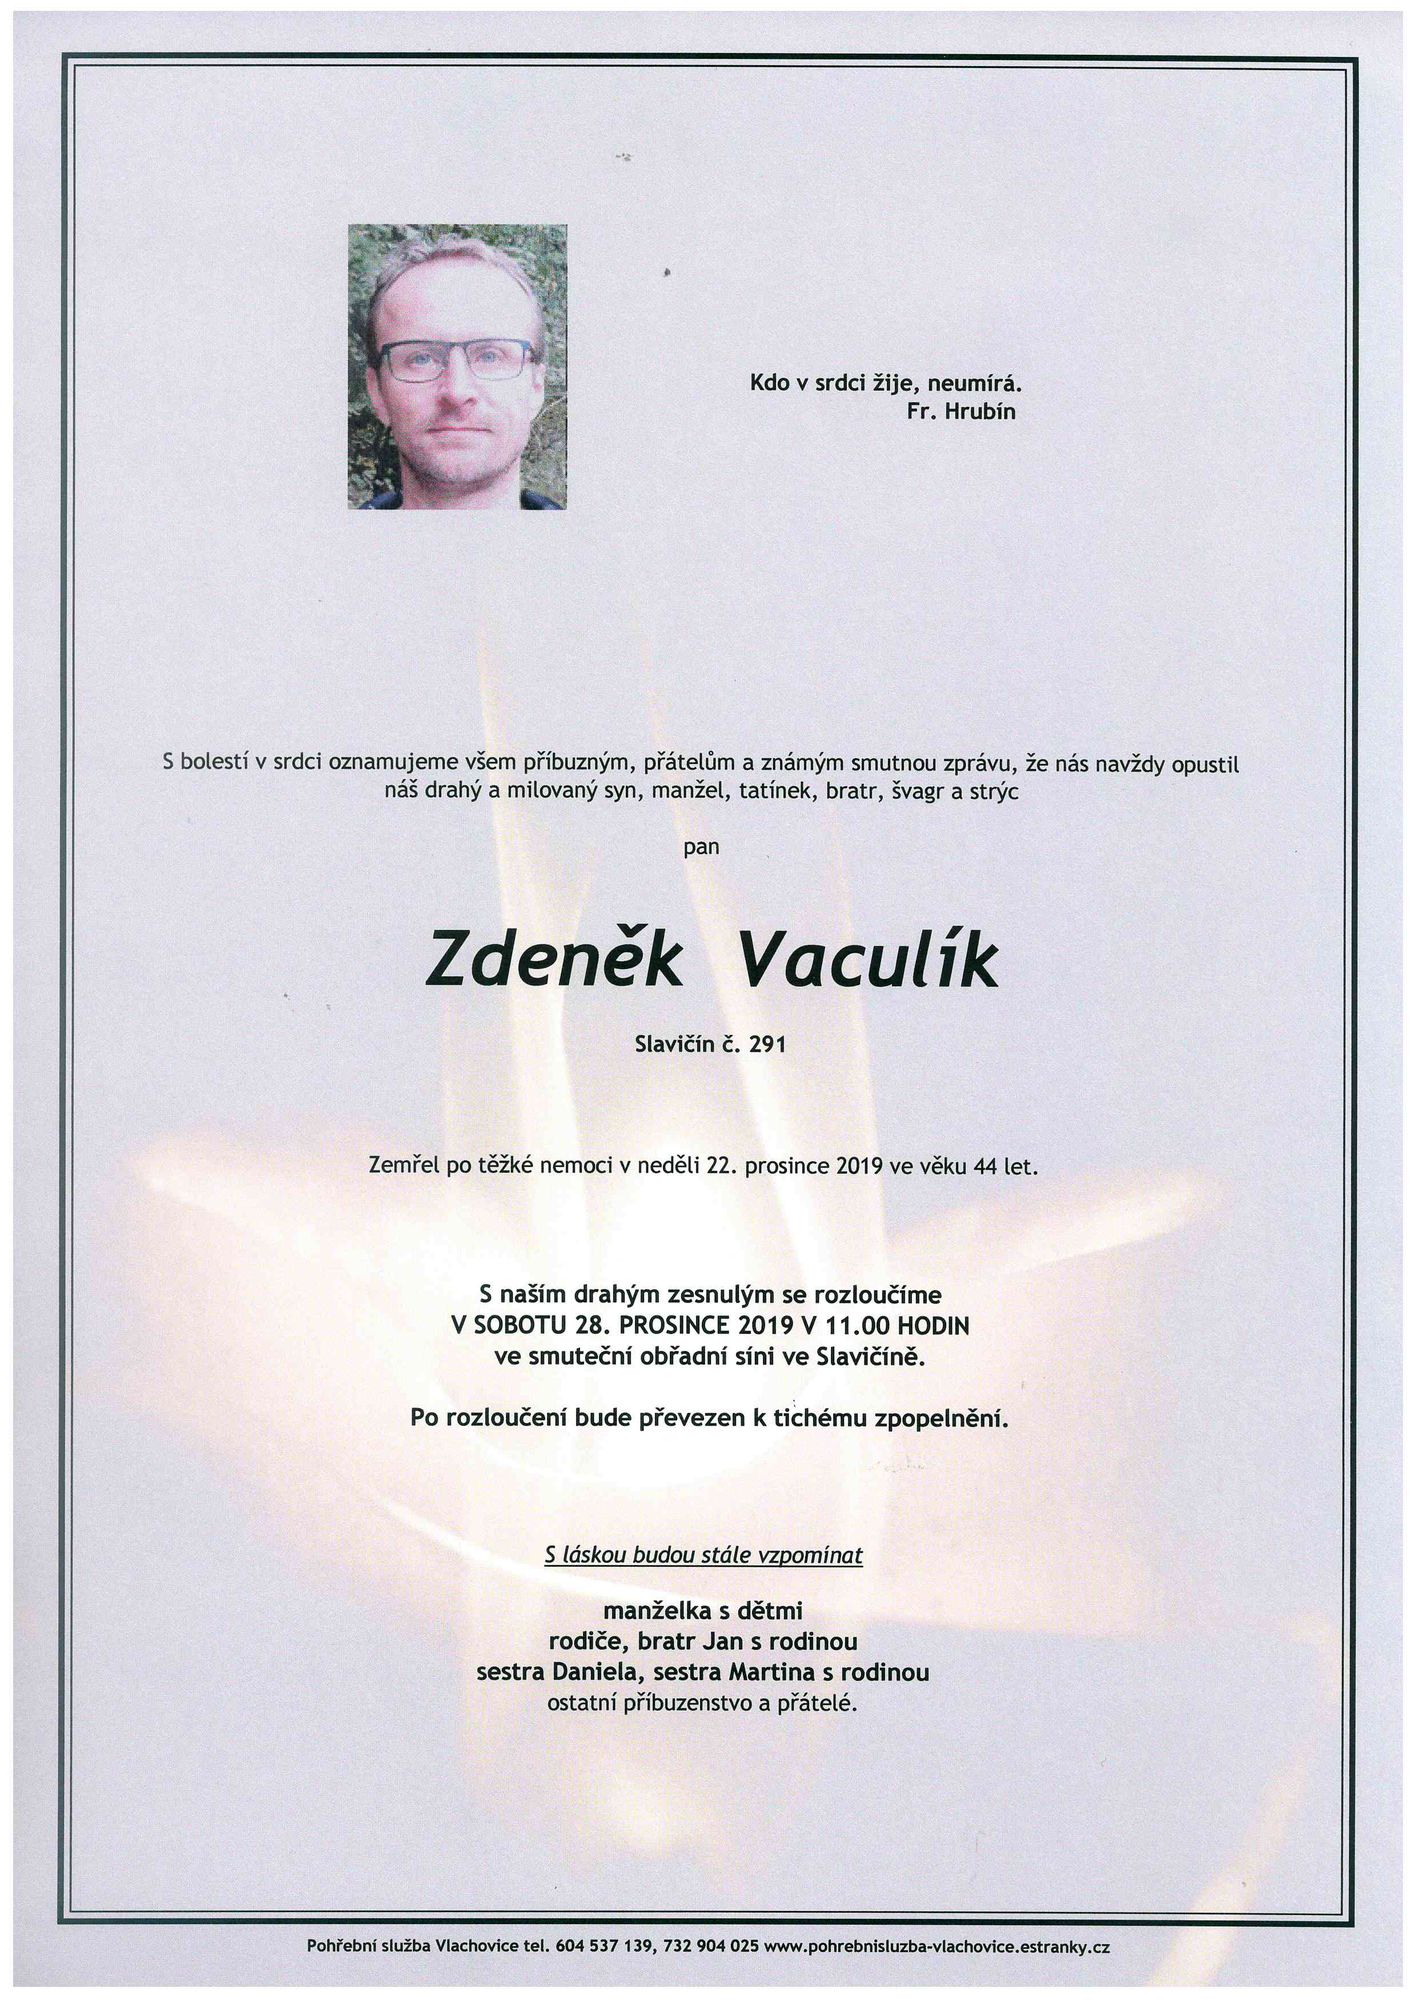 Zdeněk Vaculík